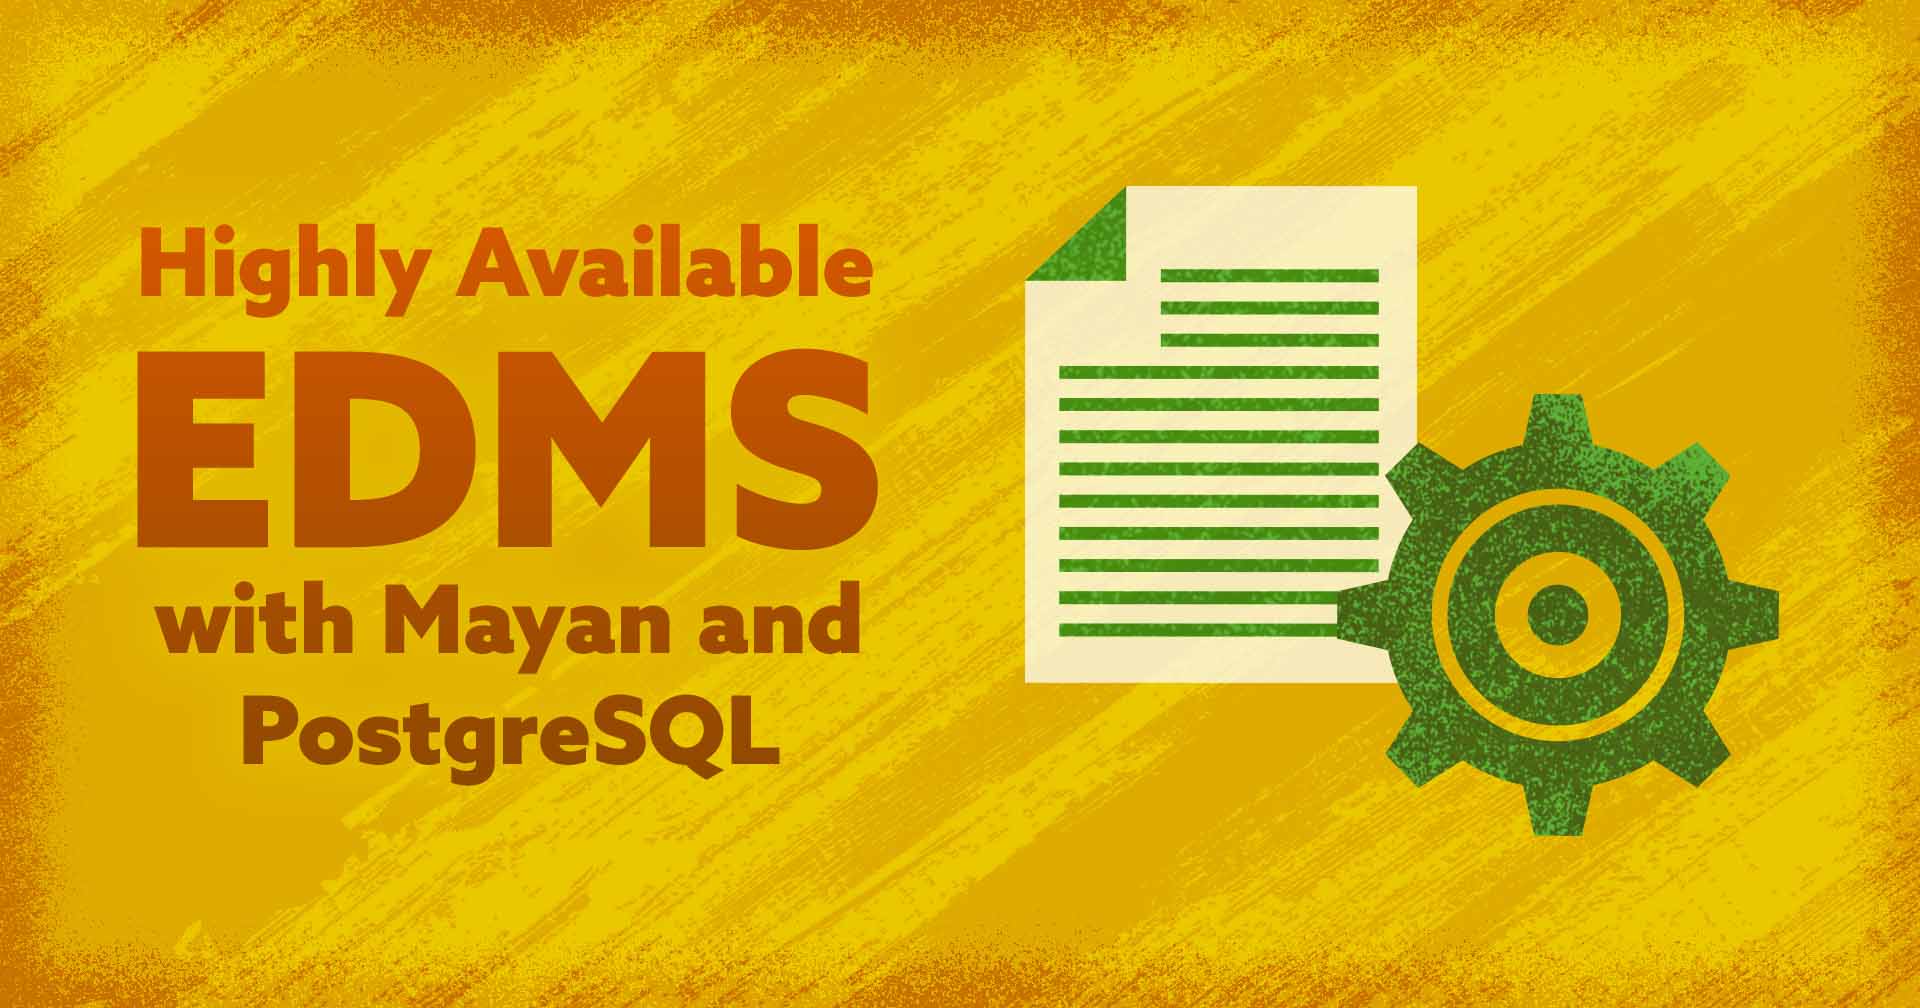 _EEDMS- com-Mayan-and-PostgreSQL de alta disponibilidade